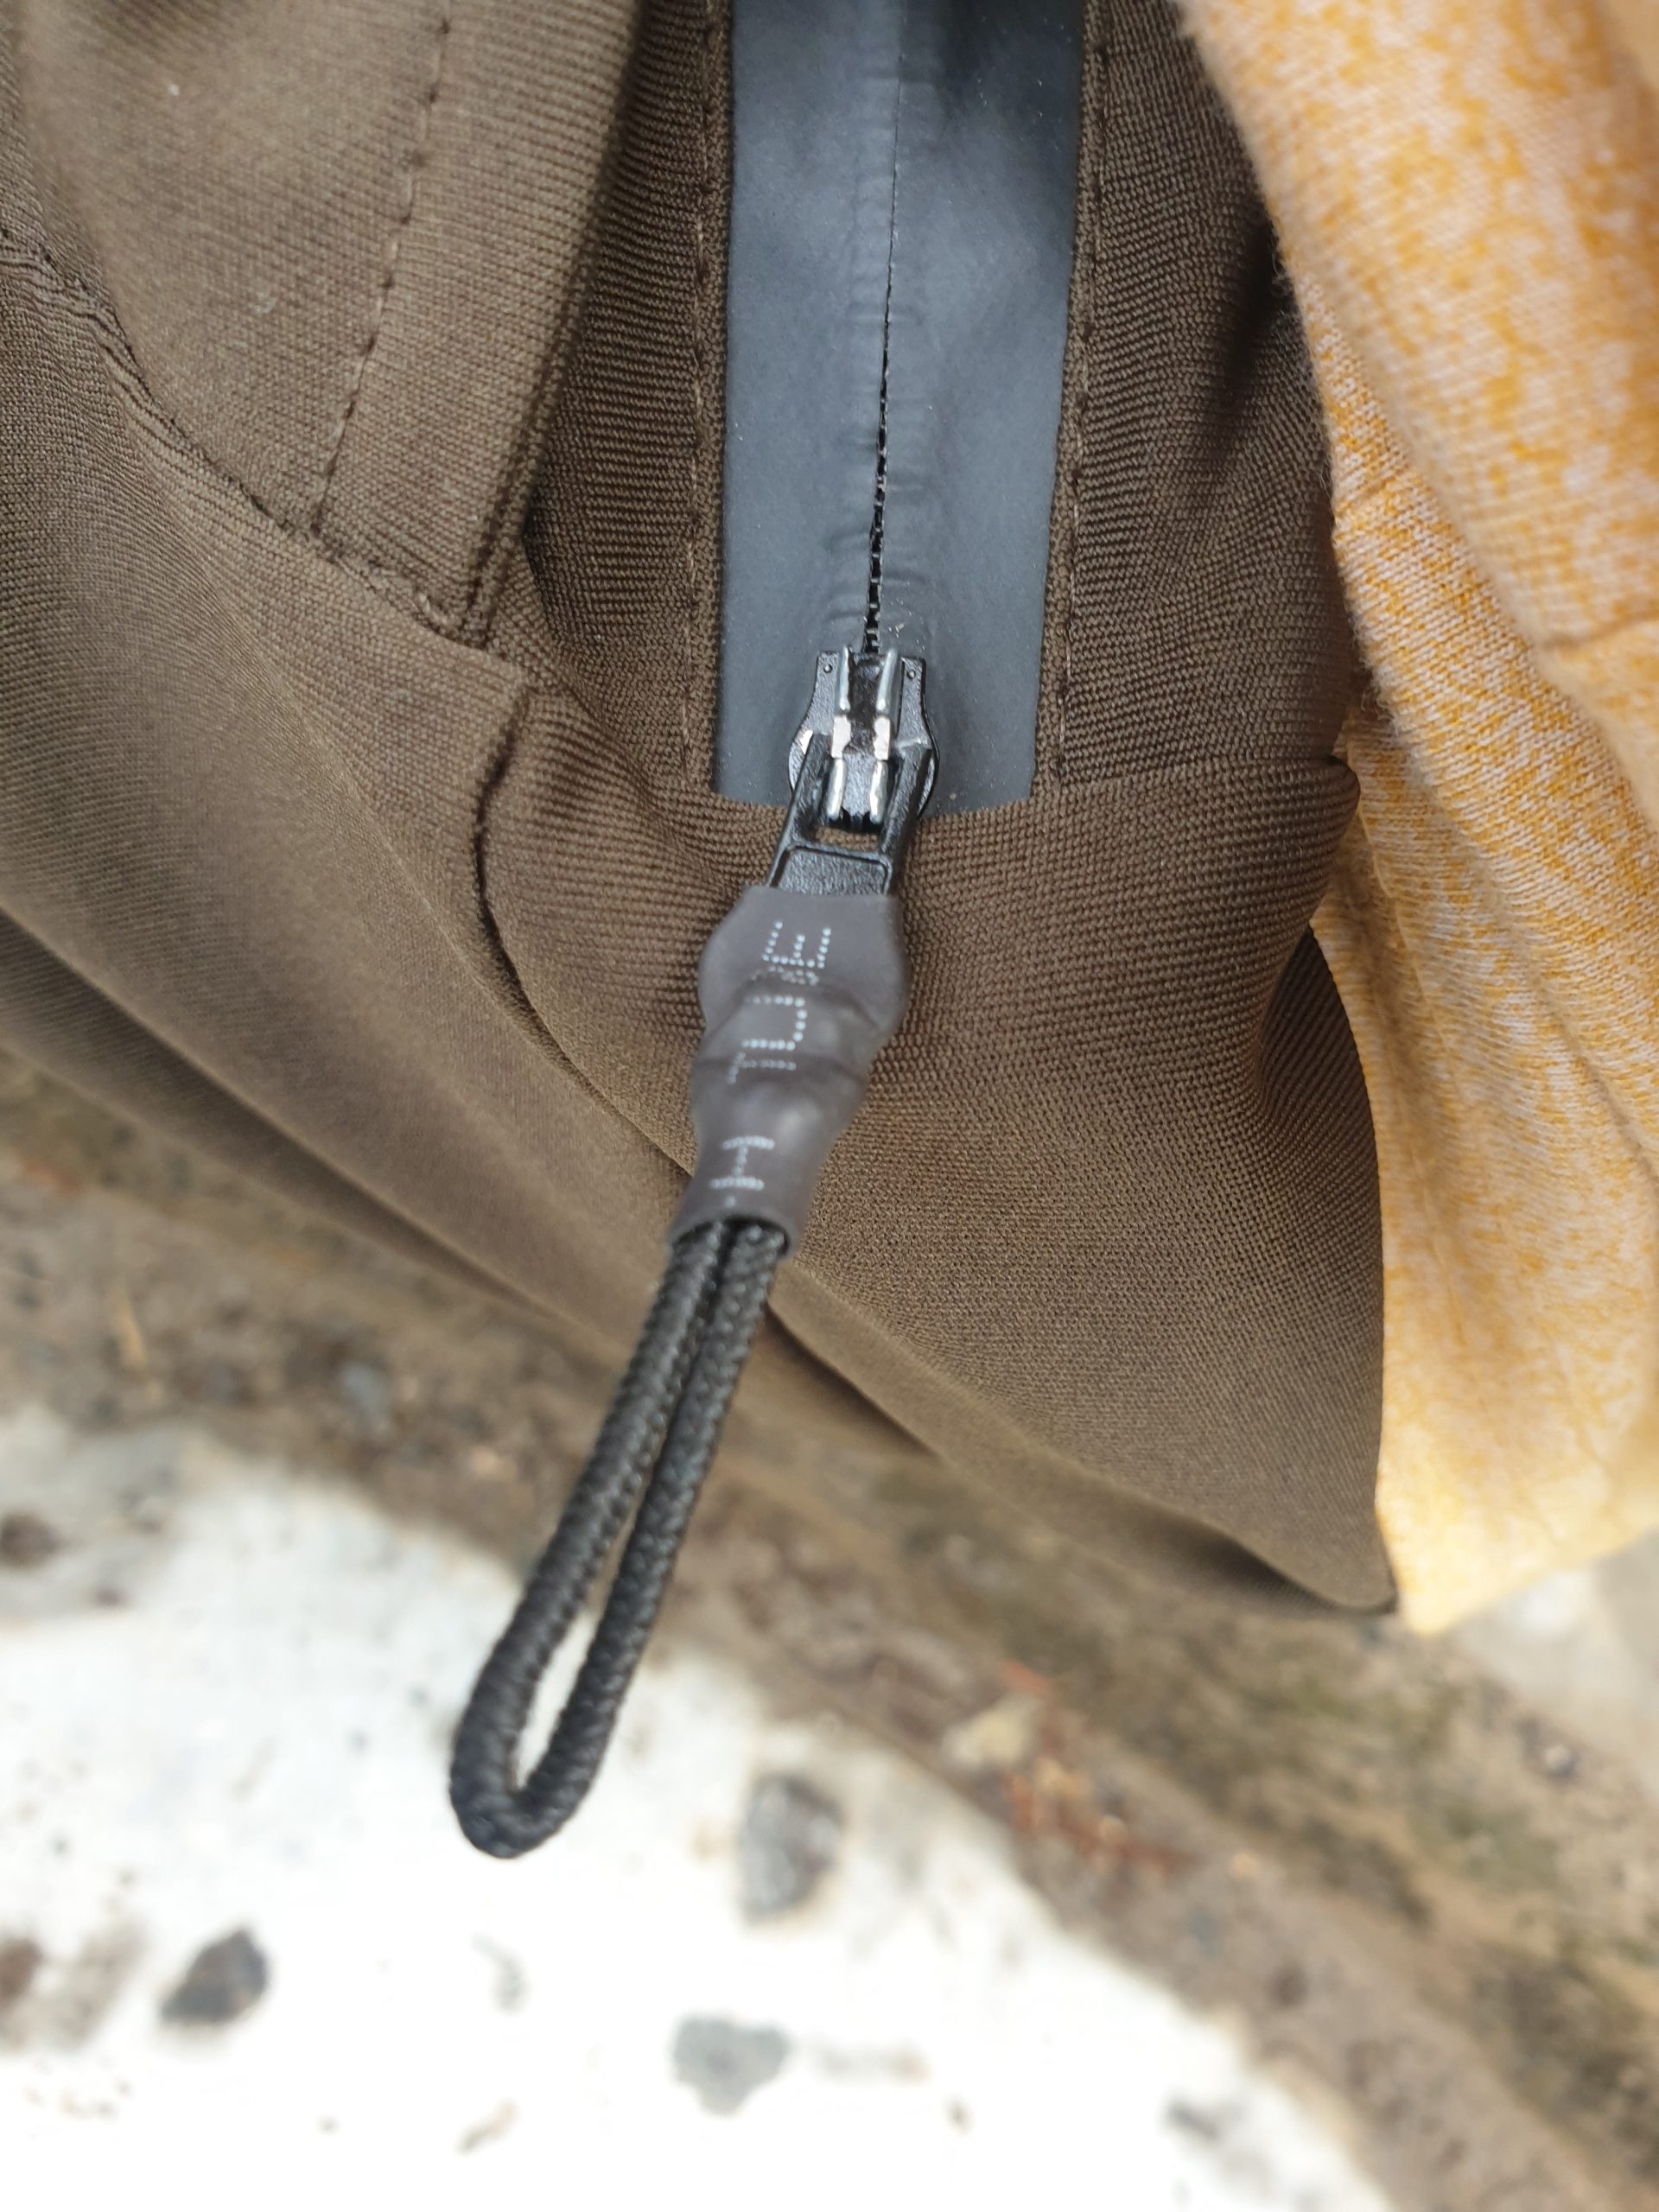 Zipper of a bag